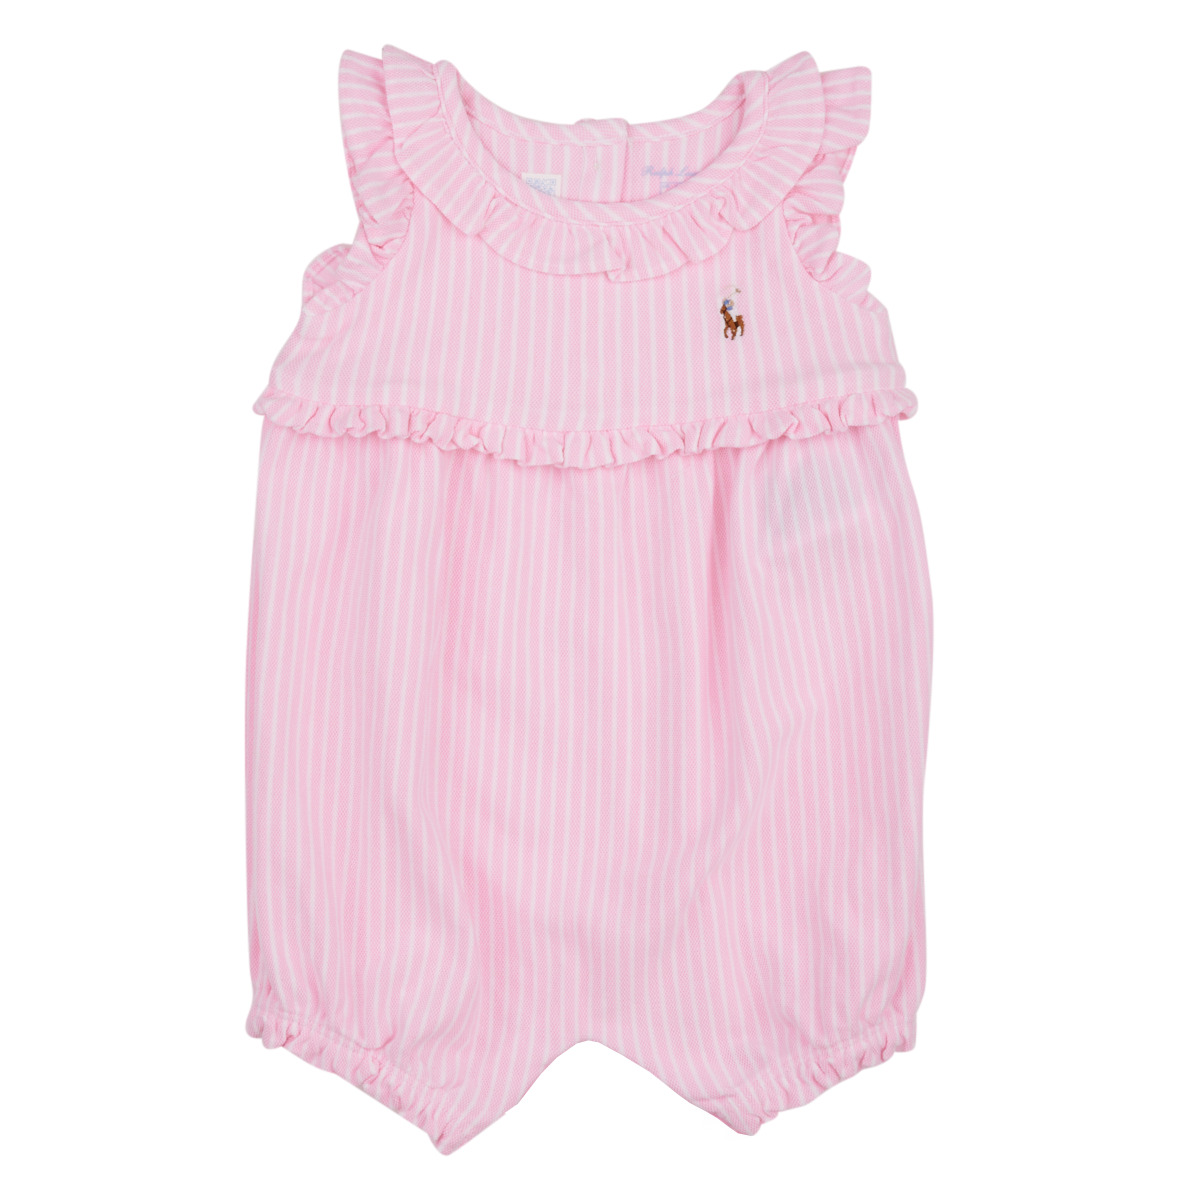 Kleidung Mädchen Overalls / Latzhosen Polo Ralph Lauren YDOXMSHBBL-ONE PIECE-SHORTALL Pink